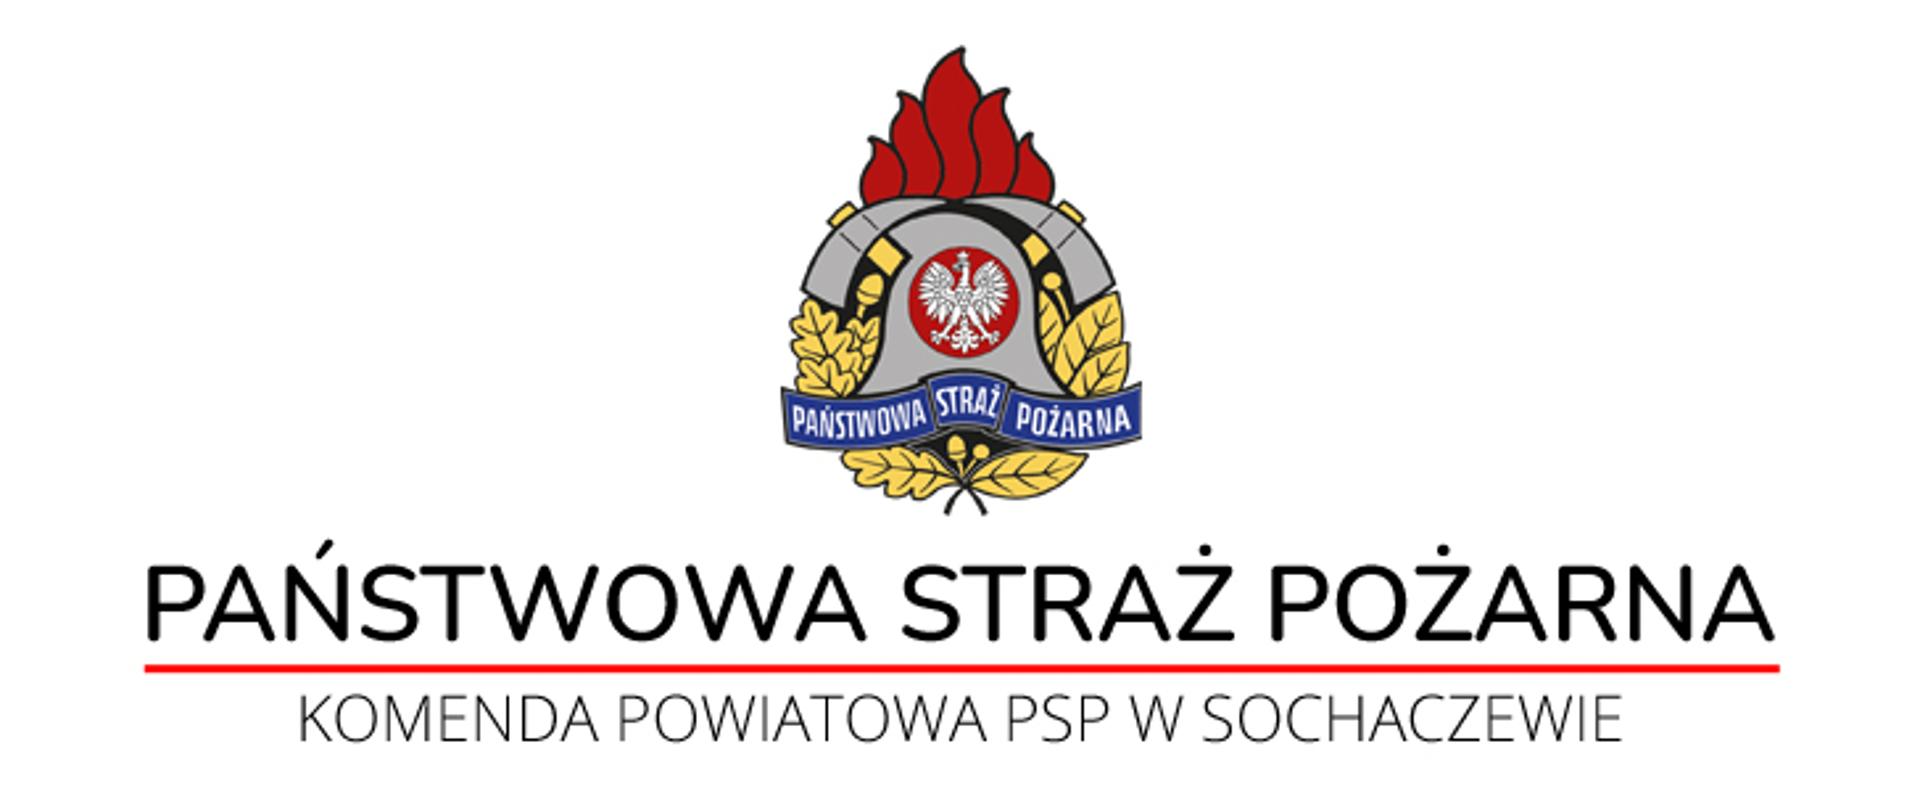 Logo PSP z podpisami - Państwowa Straż Pożarna oraz Komenda Powiatowa PSP w Sochaczewie